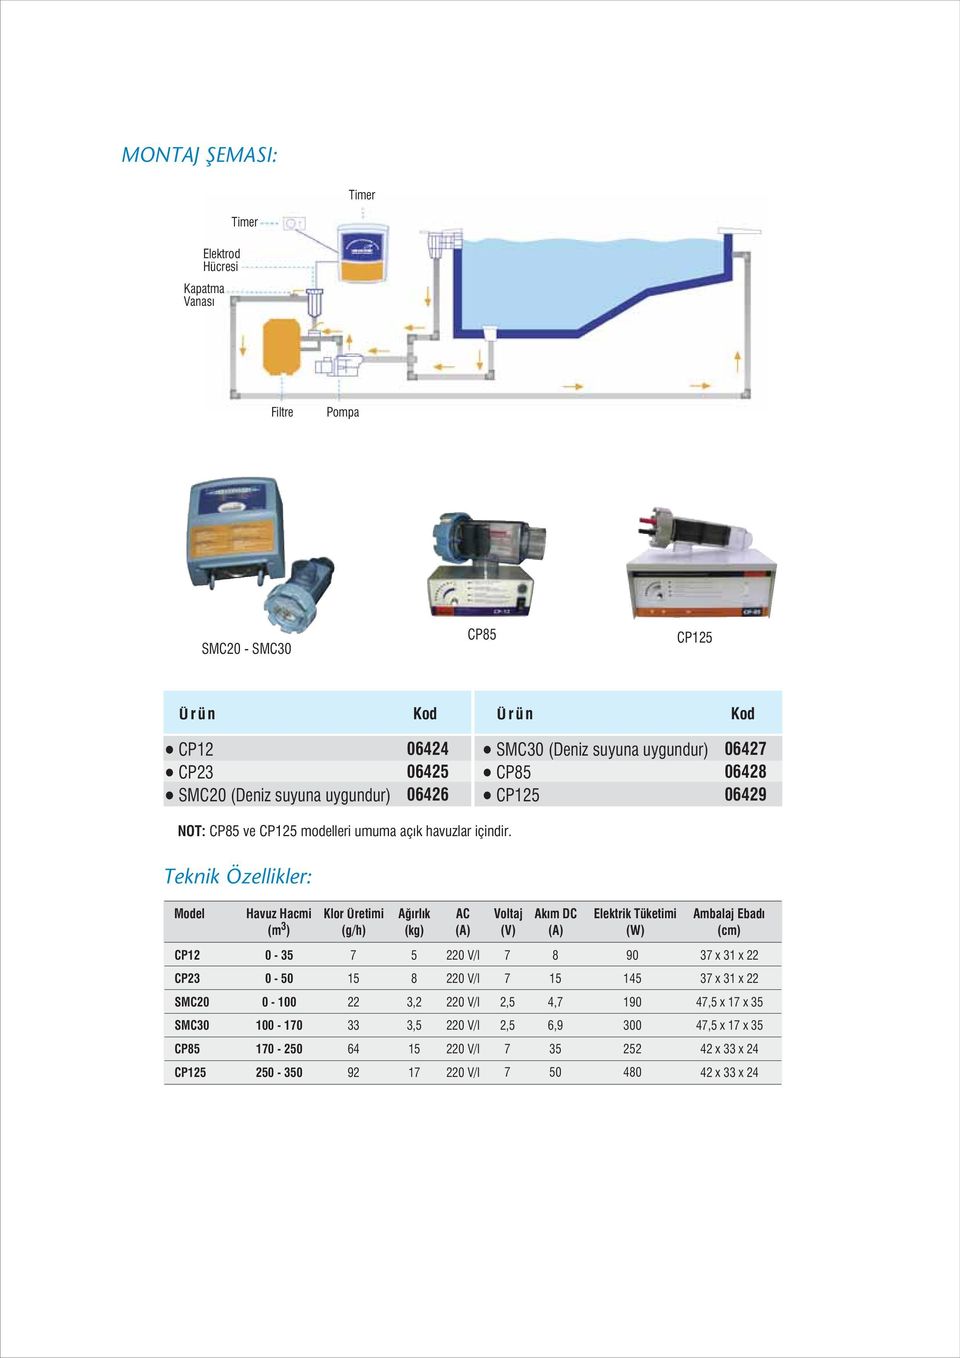 Teknik Özellikler: Model Havuz Hacmi (m 3 ) Klor Üretimi (g/h) A rl k (kg) AC (A) Voltaj (V) Ak m DC (A) Elektrik Tüketimi (W) Ambalaj Ebad (cm) CP12 0-35 5 8 90 3 x 31